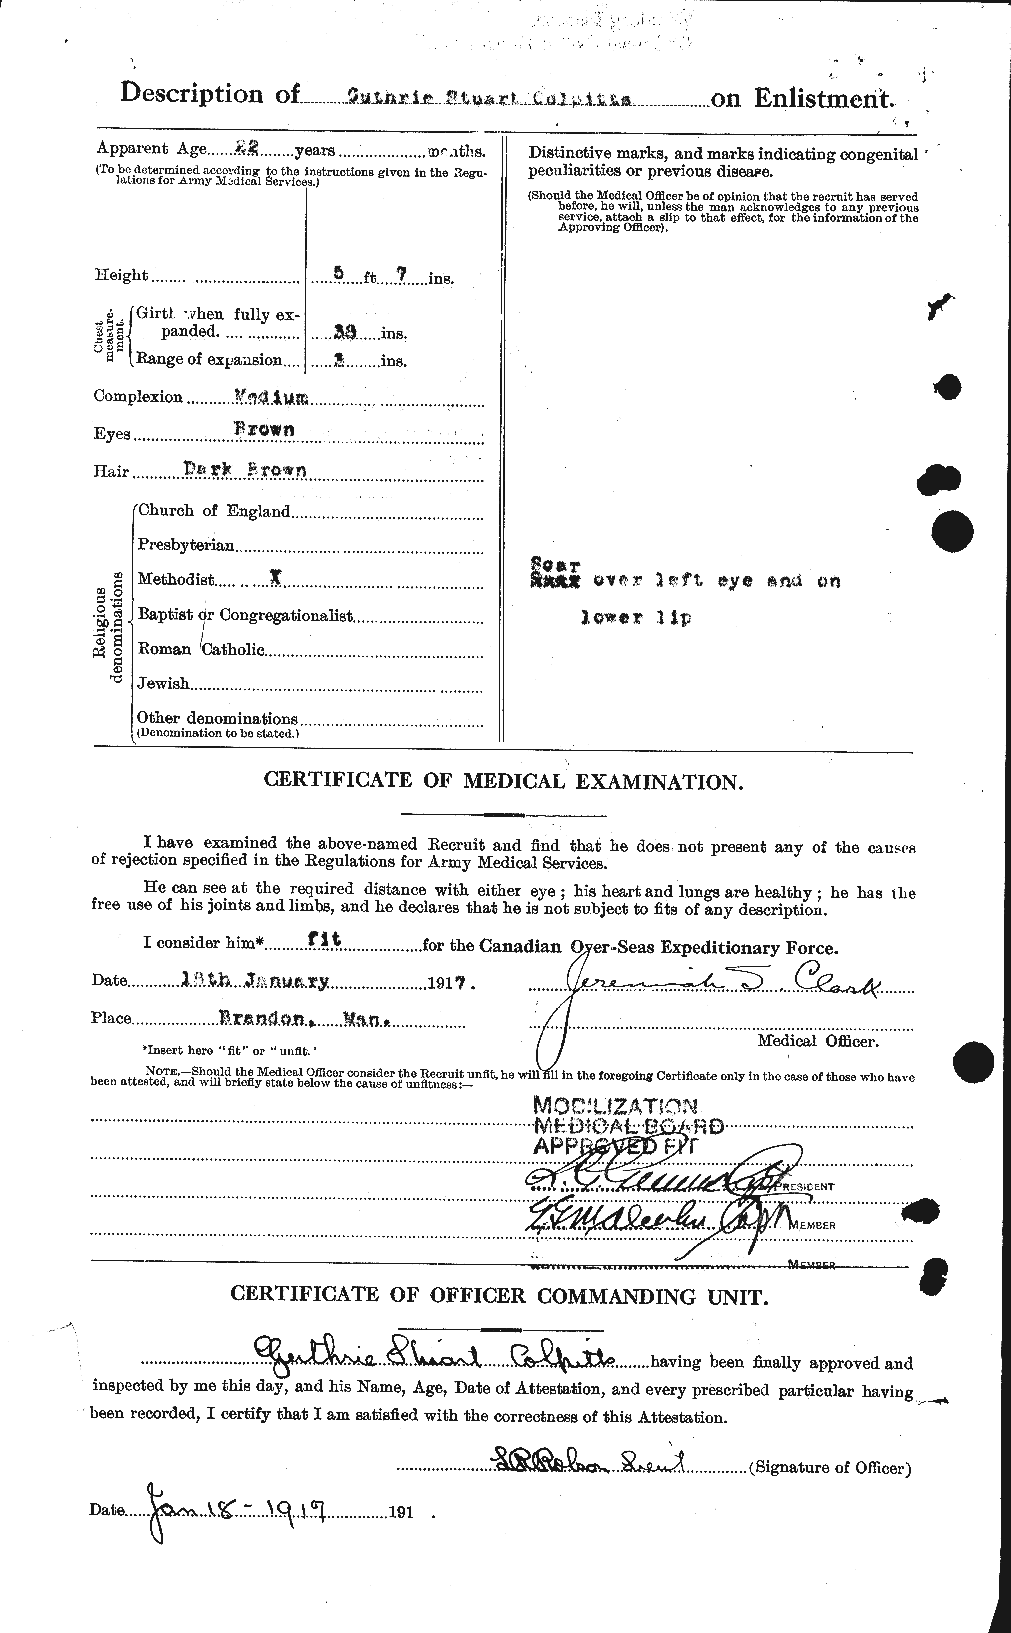 Dossiers du Personnel de la Première Guerre mondiale - CEC 067423b